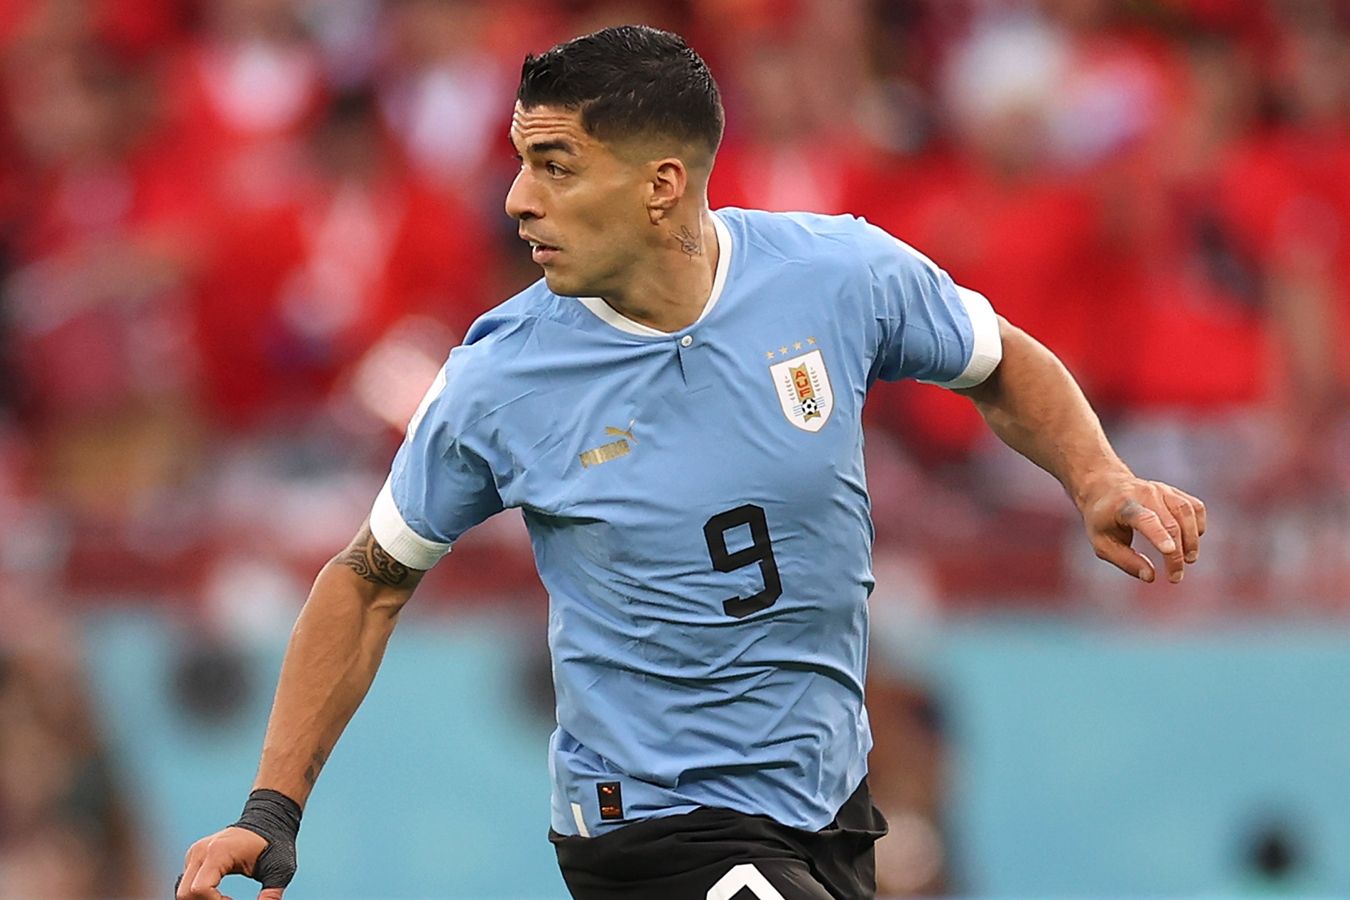 Уругвай — Панама: во сколько начало матча Кубка Америки, где смотреть прямую трансляцию